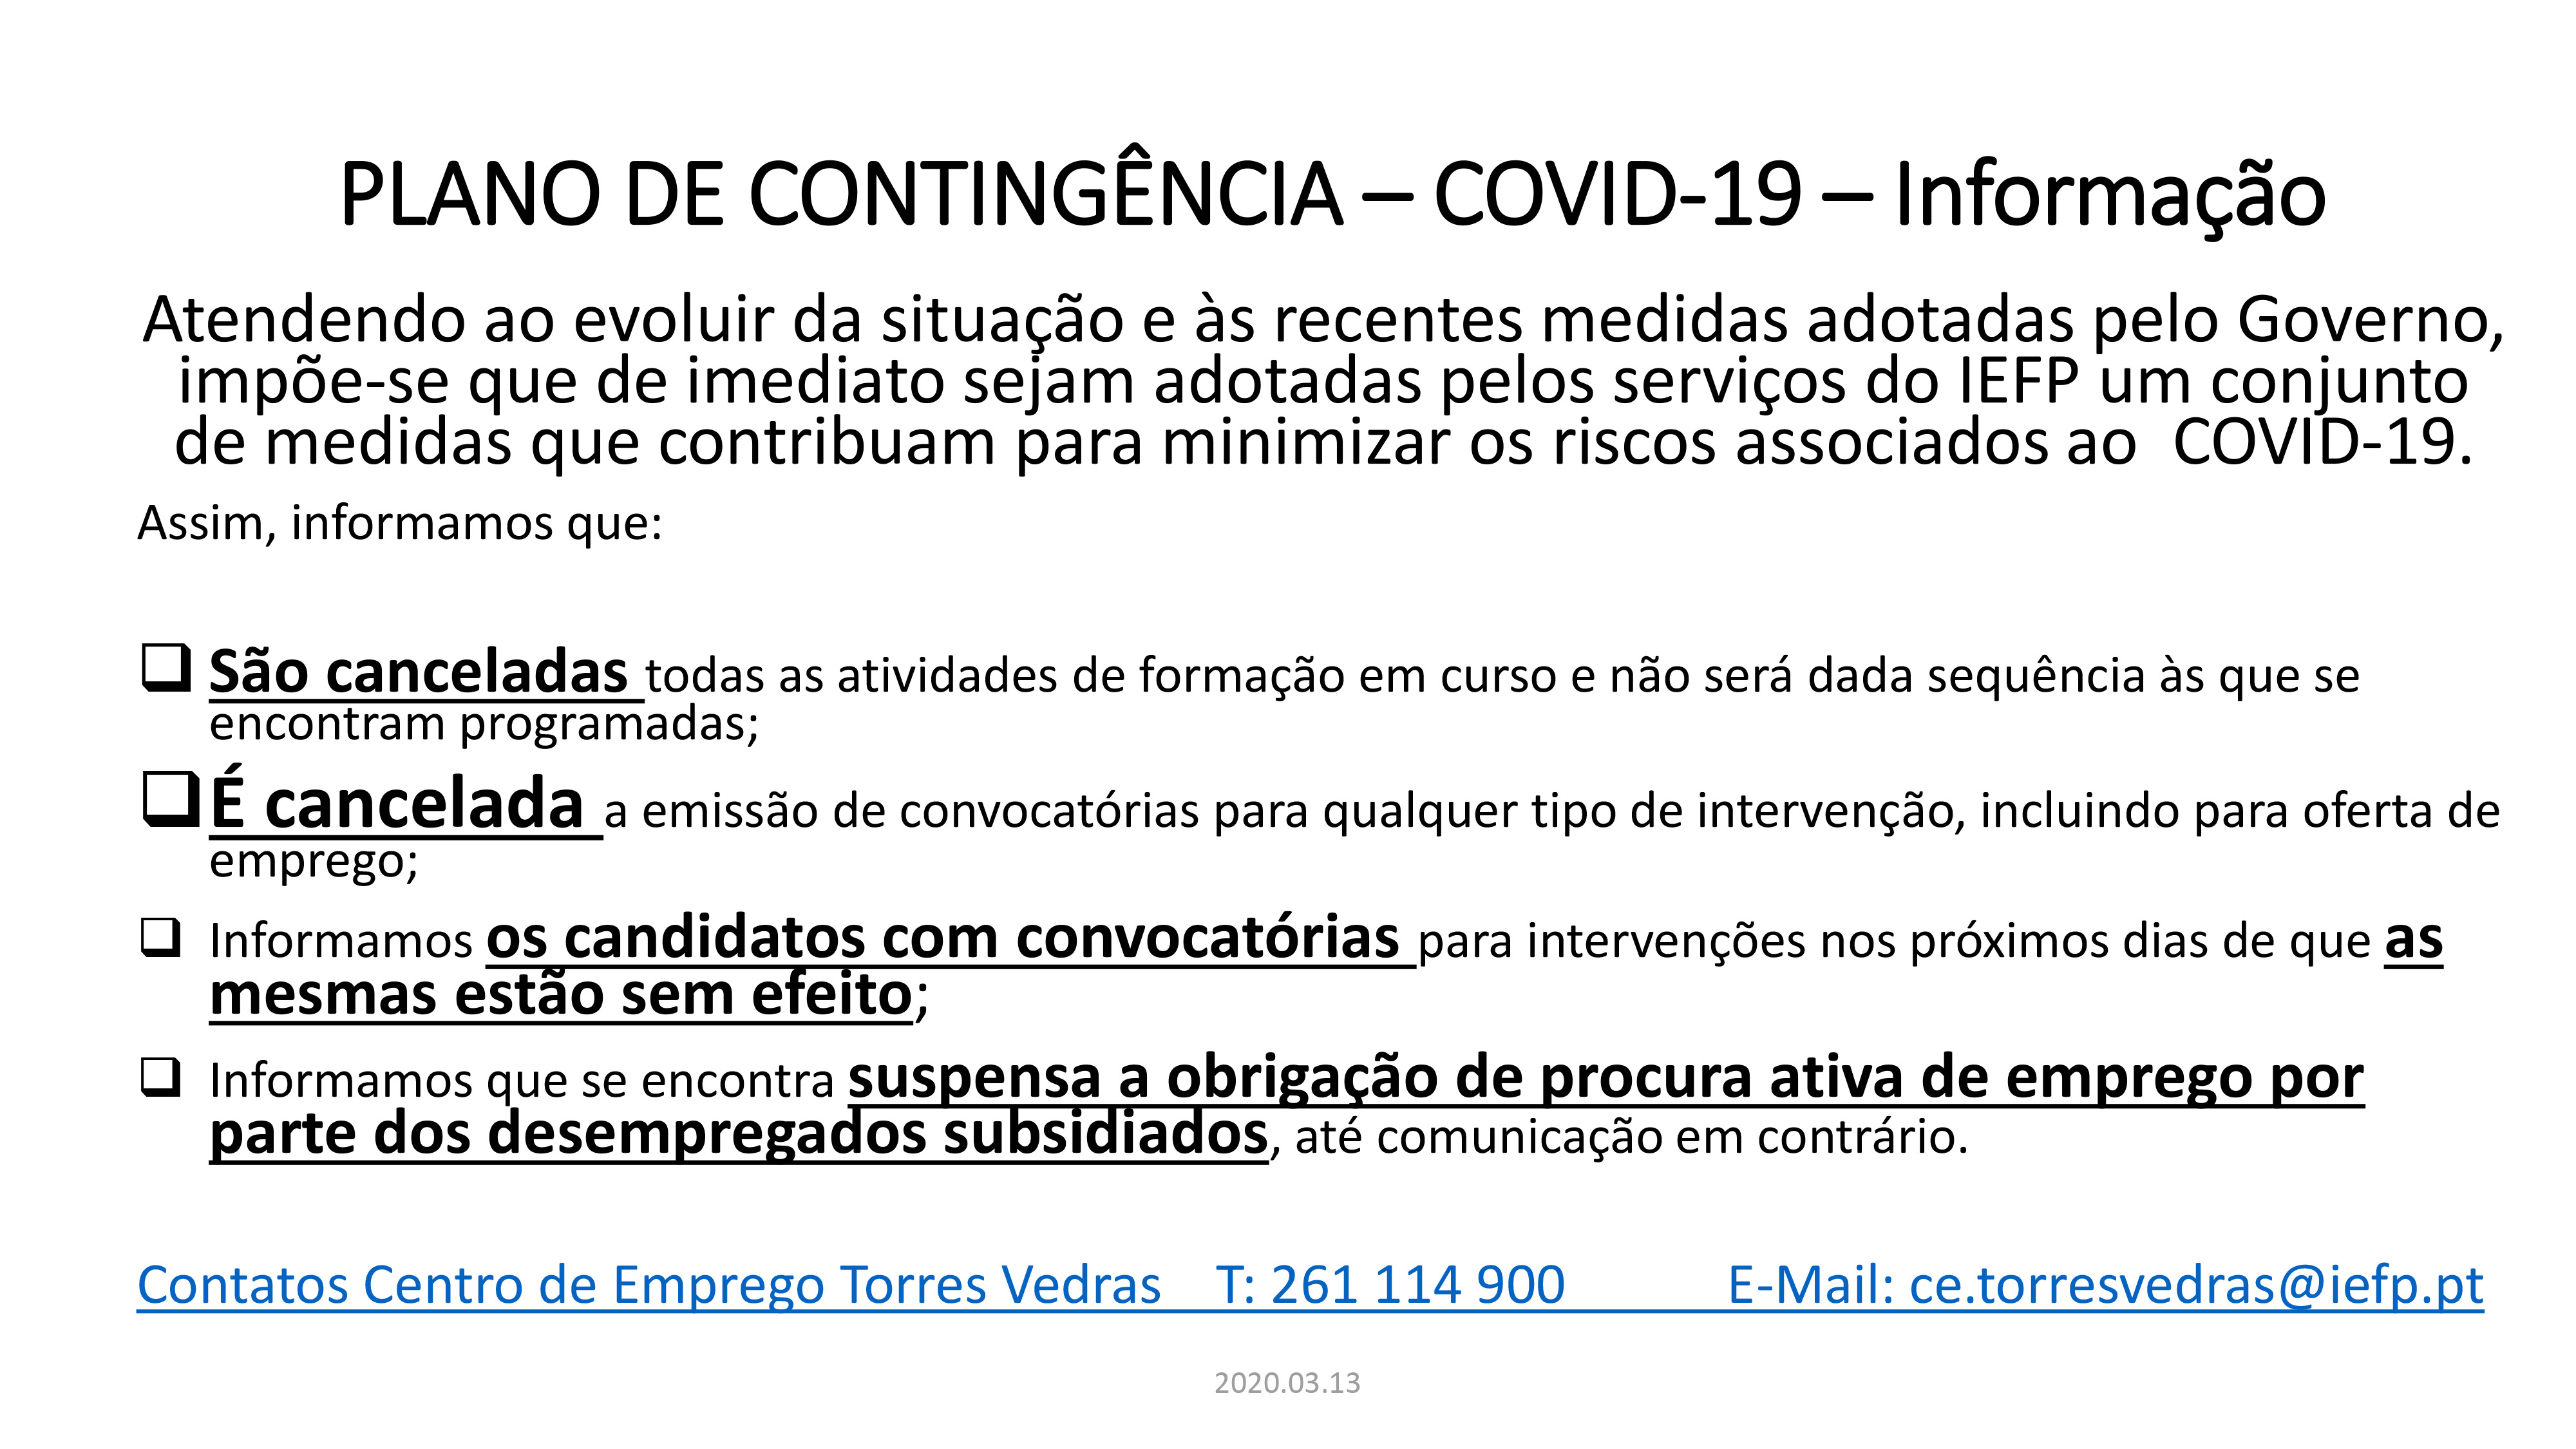 PLANO DE CONTINGÊNCIA – COVID-19 - Informação